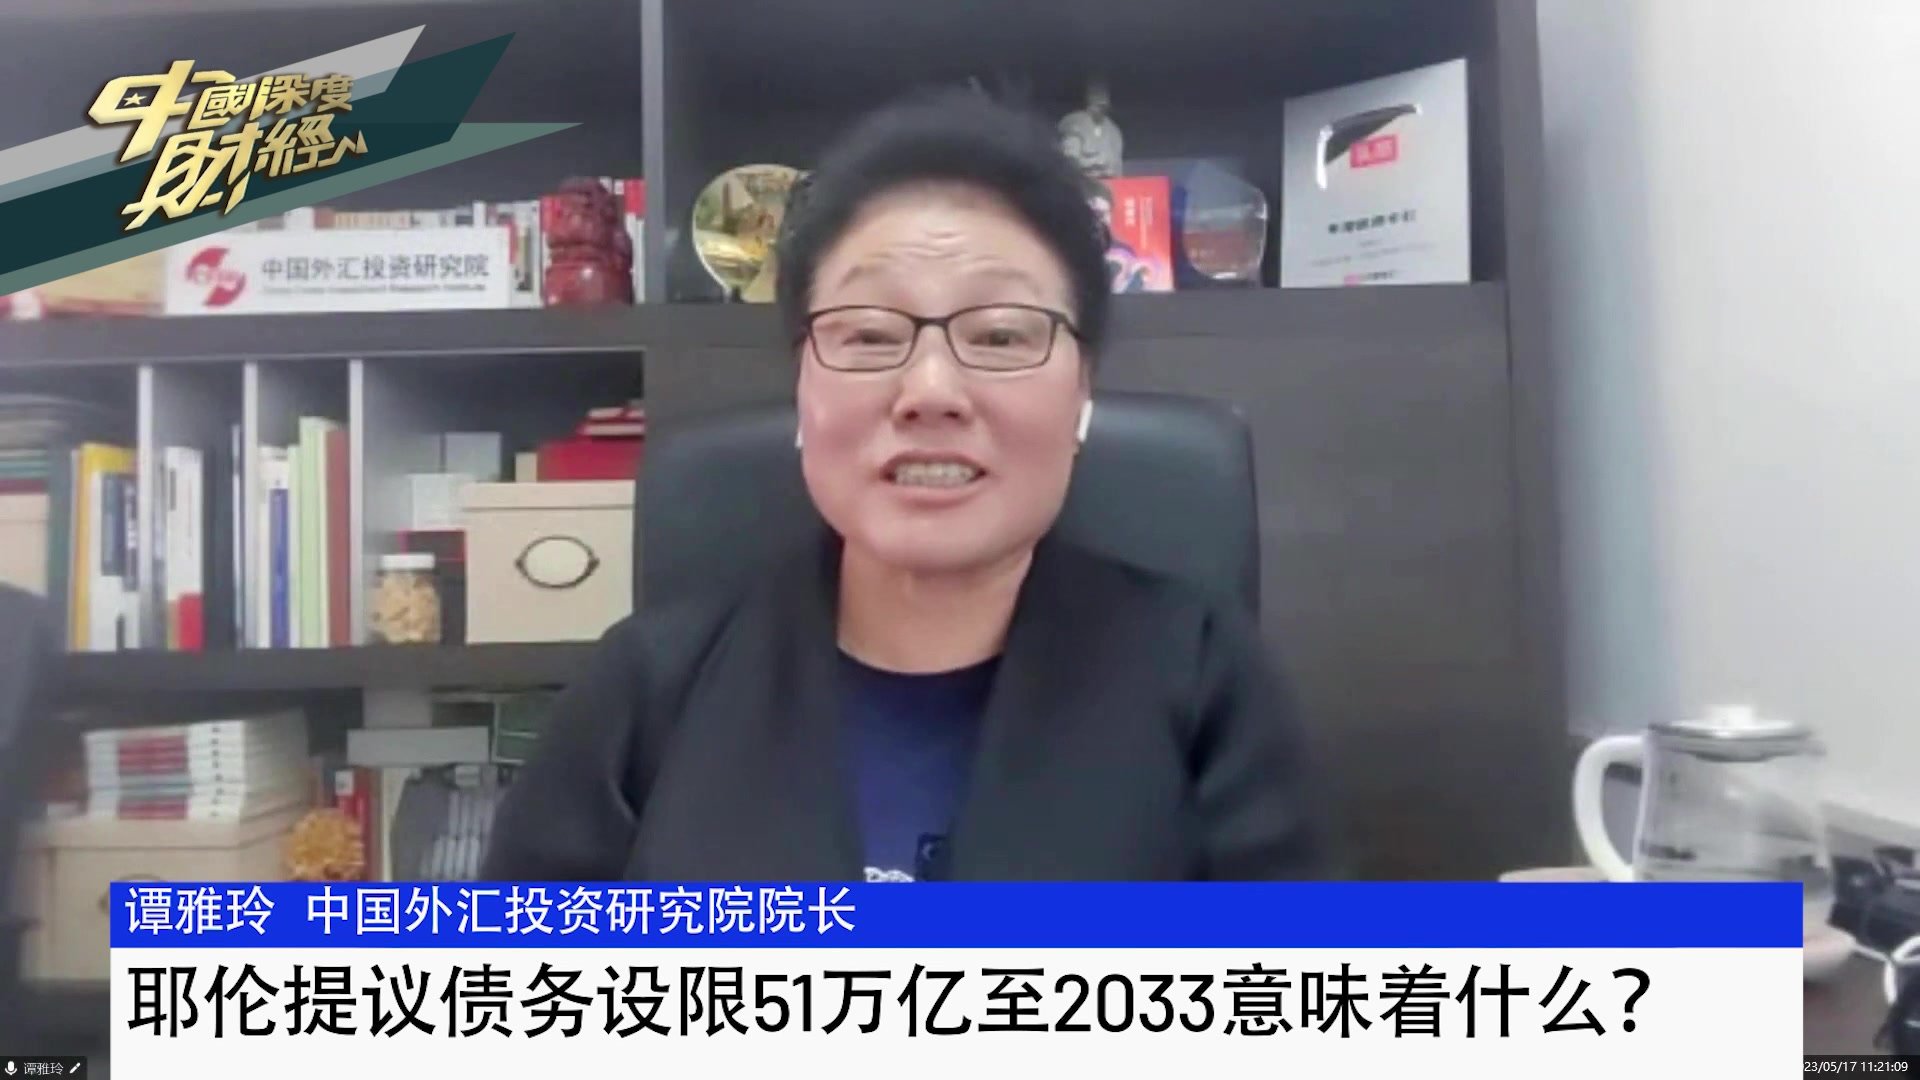 中国外汇投资研究院院长谭雅玲：耶伦提议债务设限51万亿至2033意味着什么？